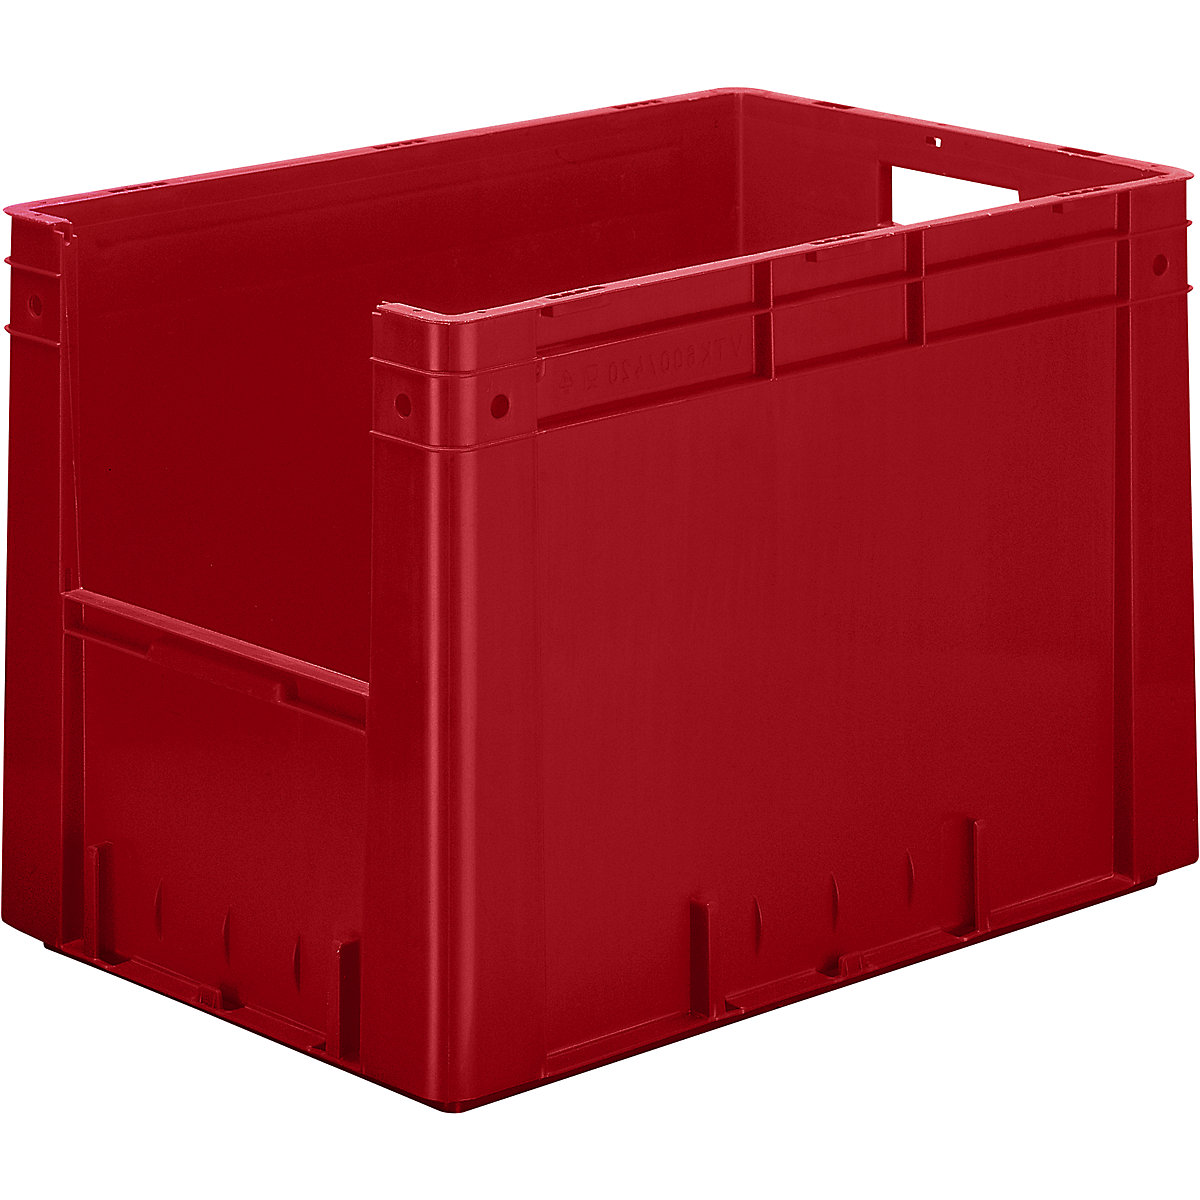 Spremnik za slaganje u EURO formatu, volumen 80 l, ŠxVxD 600 x 400 x 420 mm, pak. 2 kom., u crvenoj boji-3